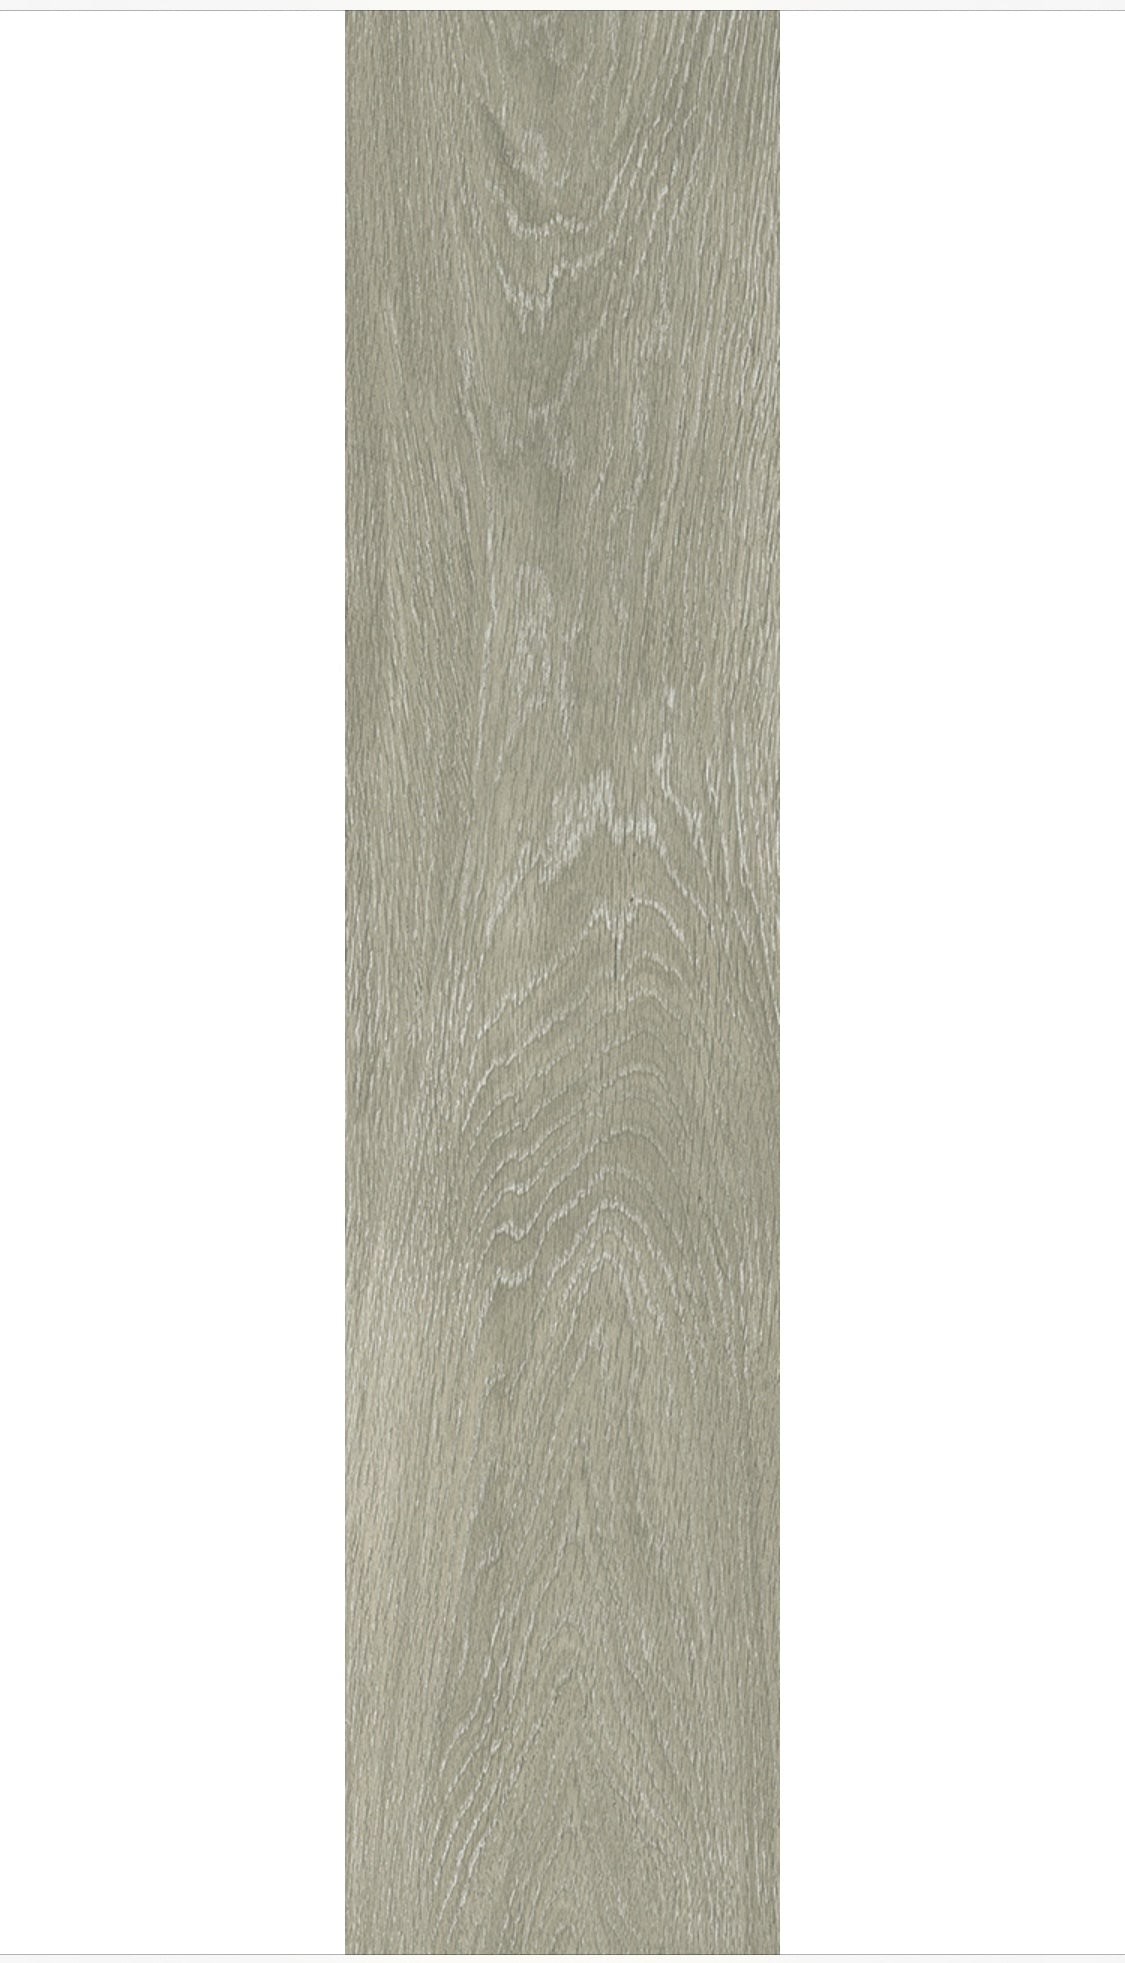 Silver Gray 20 mil Water Resistant Loose Lay Luxury Vinyl Plank Flooring - 9 in. W x 48 in. L